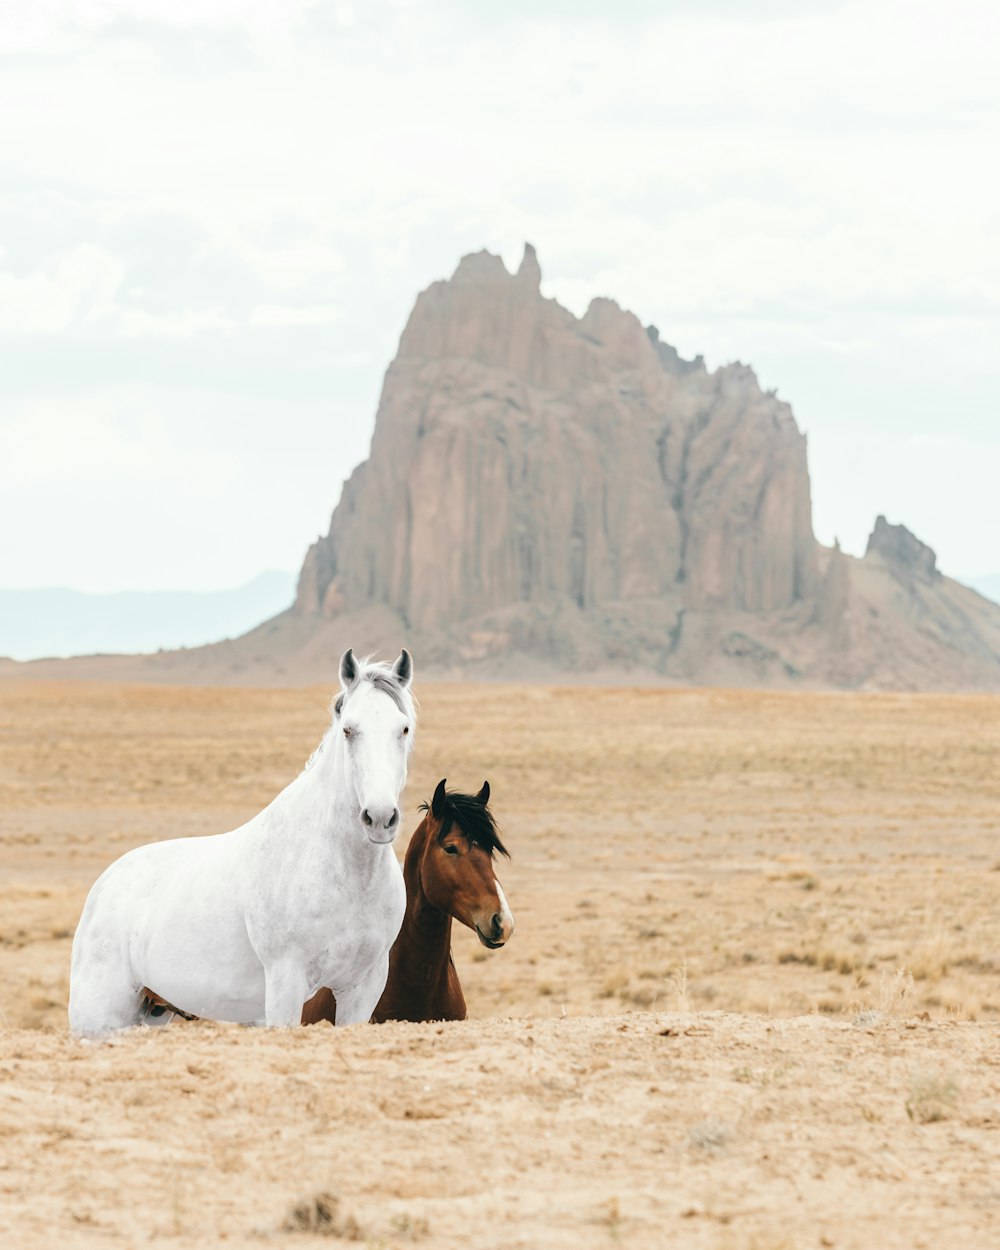 昼間の茶色の野原に白と茶色の馬